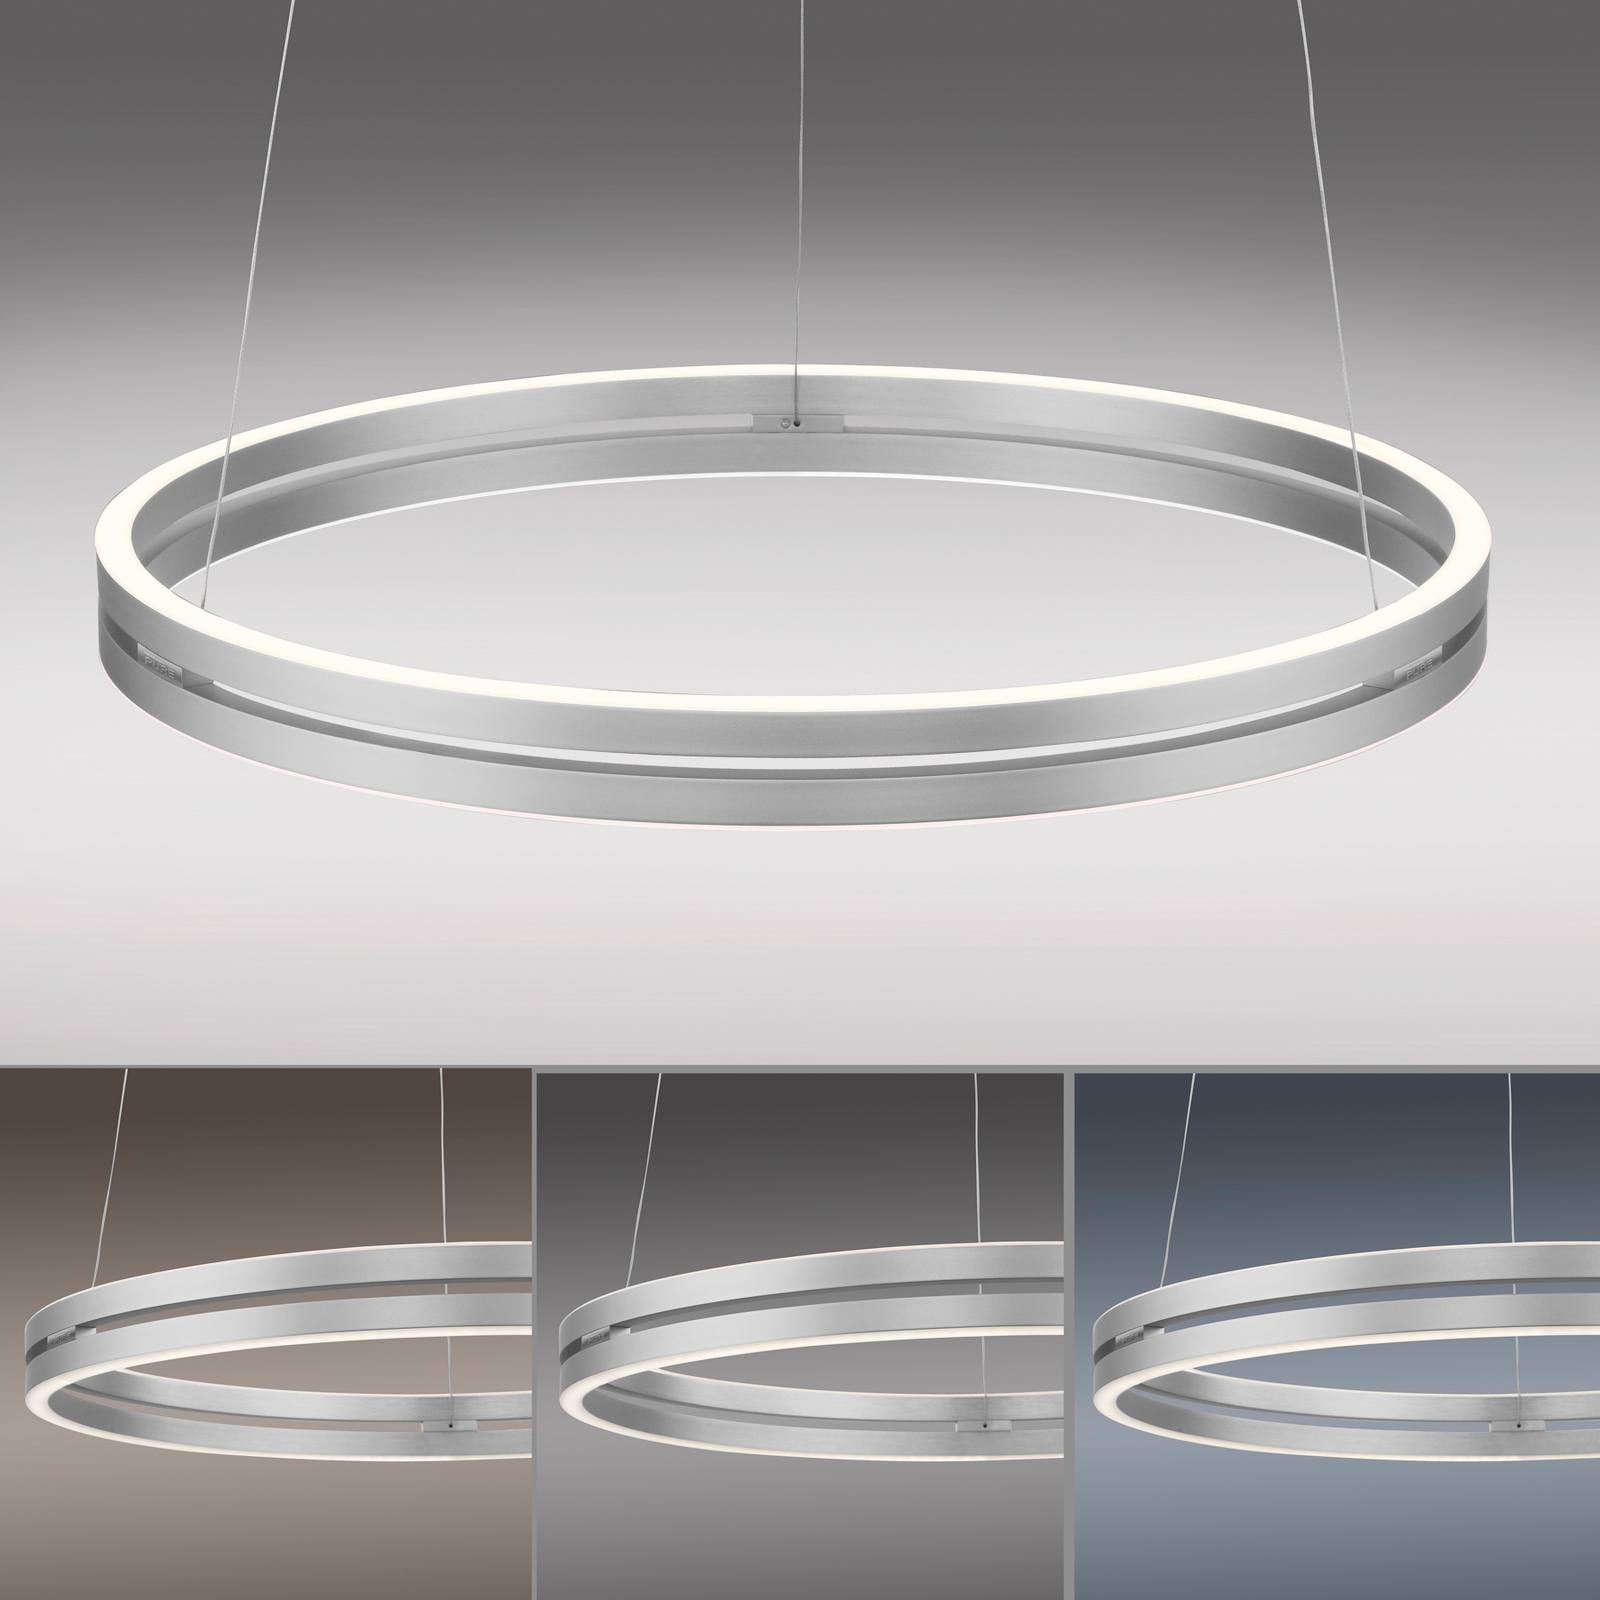 PURE E-Loop LED závěsné světlo, CCT, stříbrná